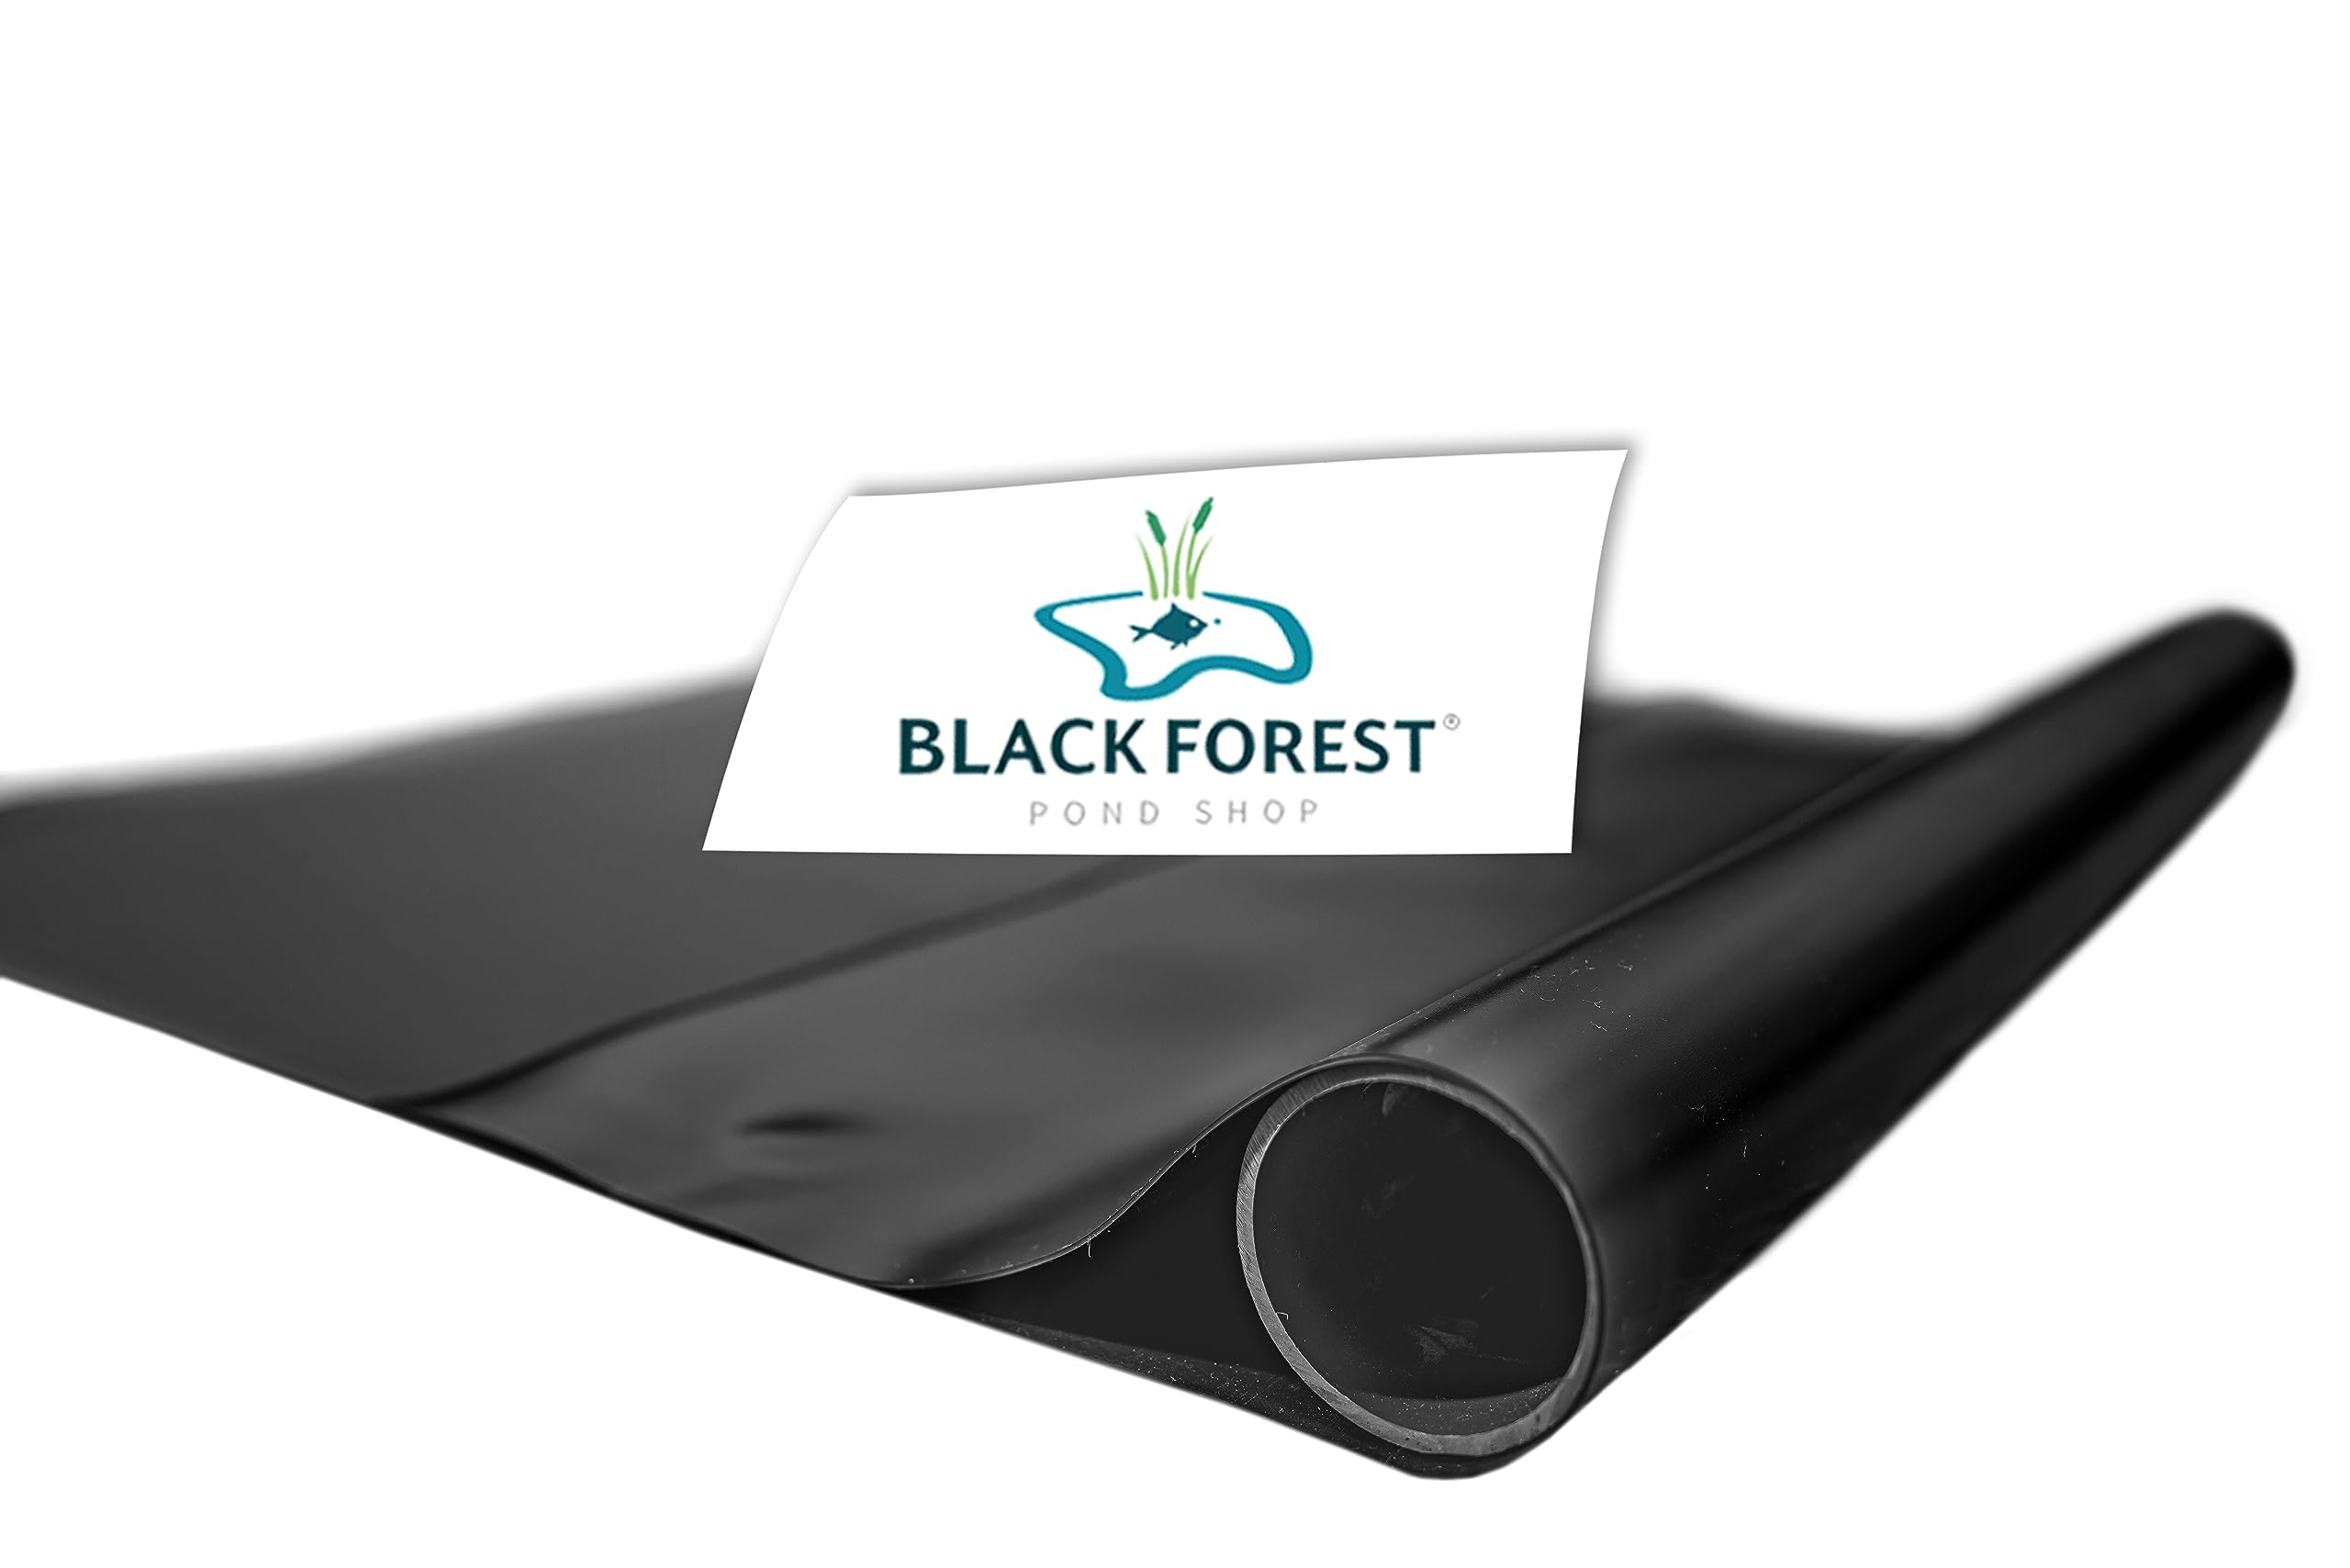 Black Forest Pond Shop PVC Teichfolie schwarz 1 mm 6 x 8 m für Schwimmteich Gartenteich Badeteich - Made in Germany 6x8m